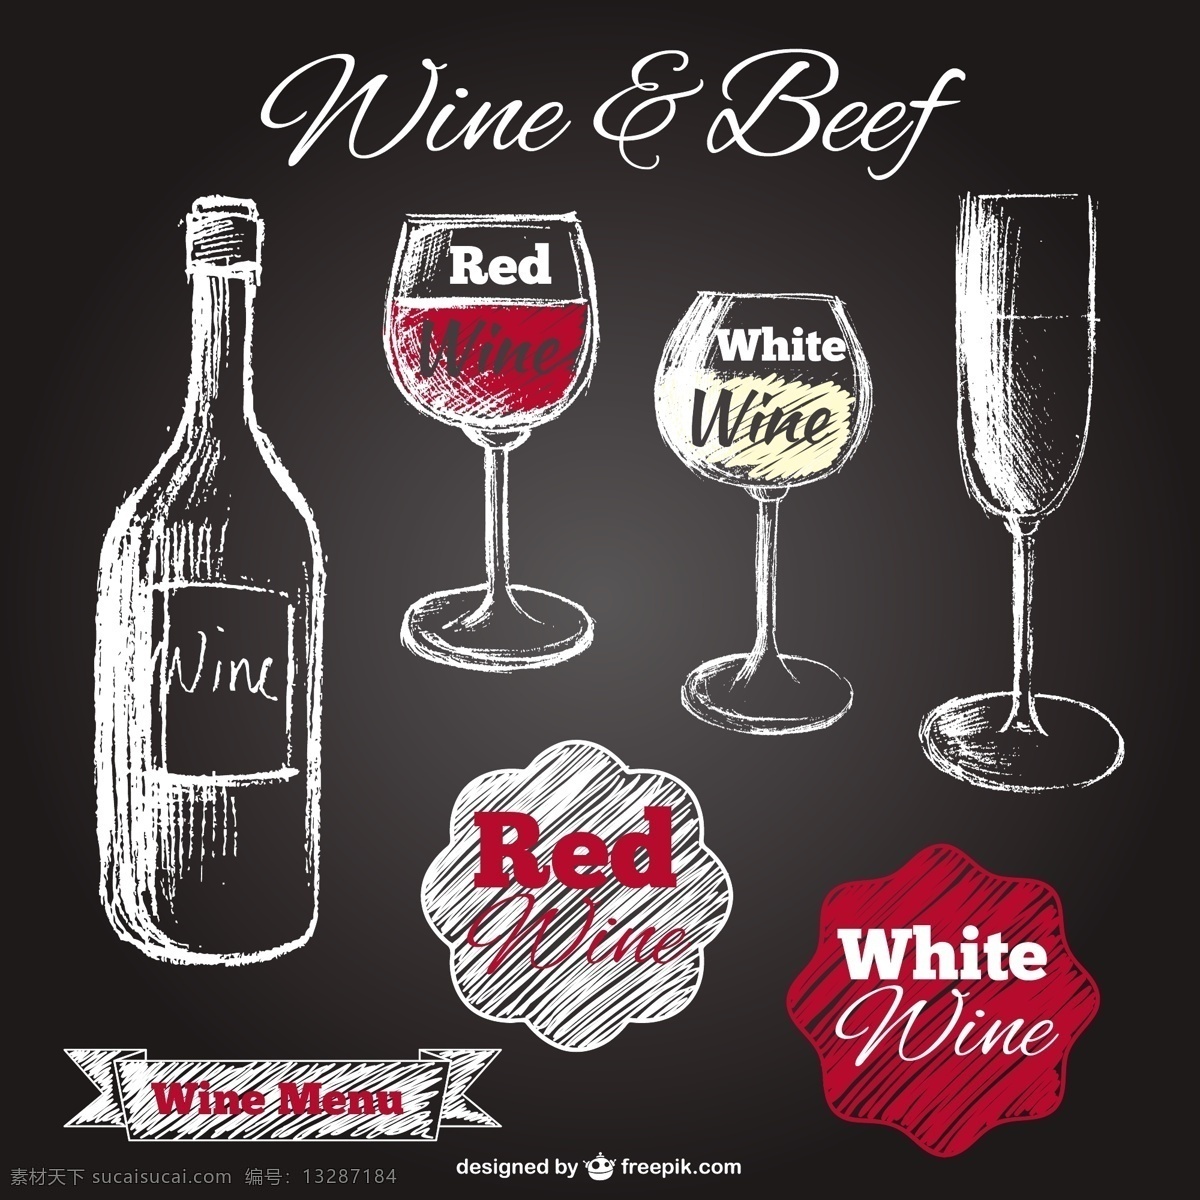 粉笔 黑板 上 画 瓶 酒 菜单 手 餐厅 手画 红 玻璃 餐厅菜单 名单 白葡萄酒 酒杯 葡萄酒瓶 红酒 葡萄酒 黑色